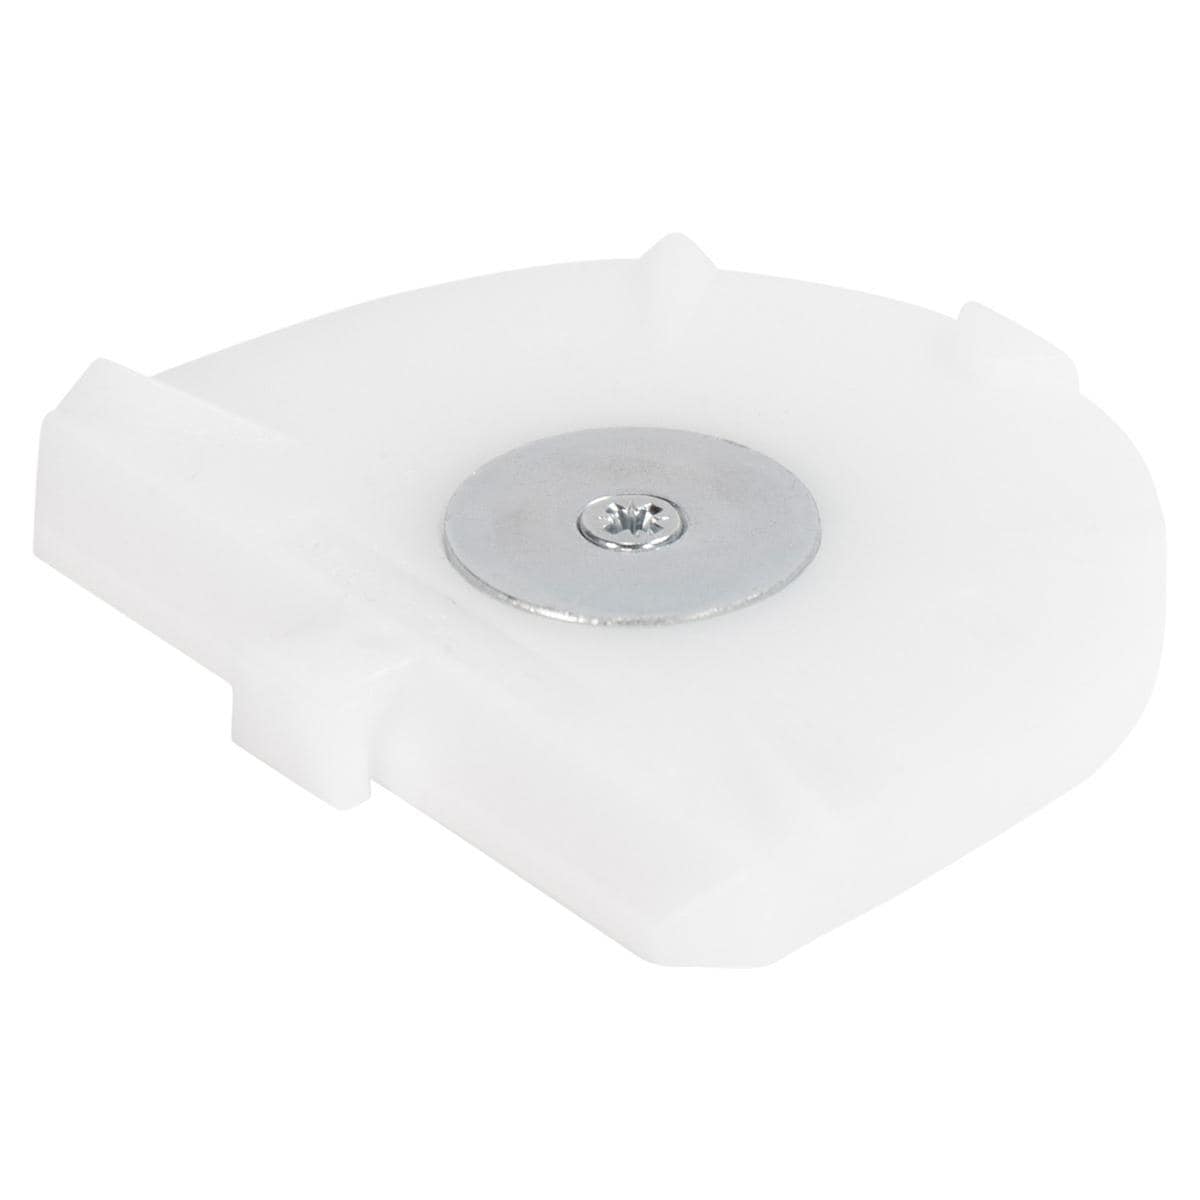 Combiflex PLUS Sockelplatten - Weiß, klein, Packung 100 Stück